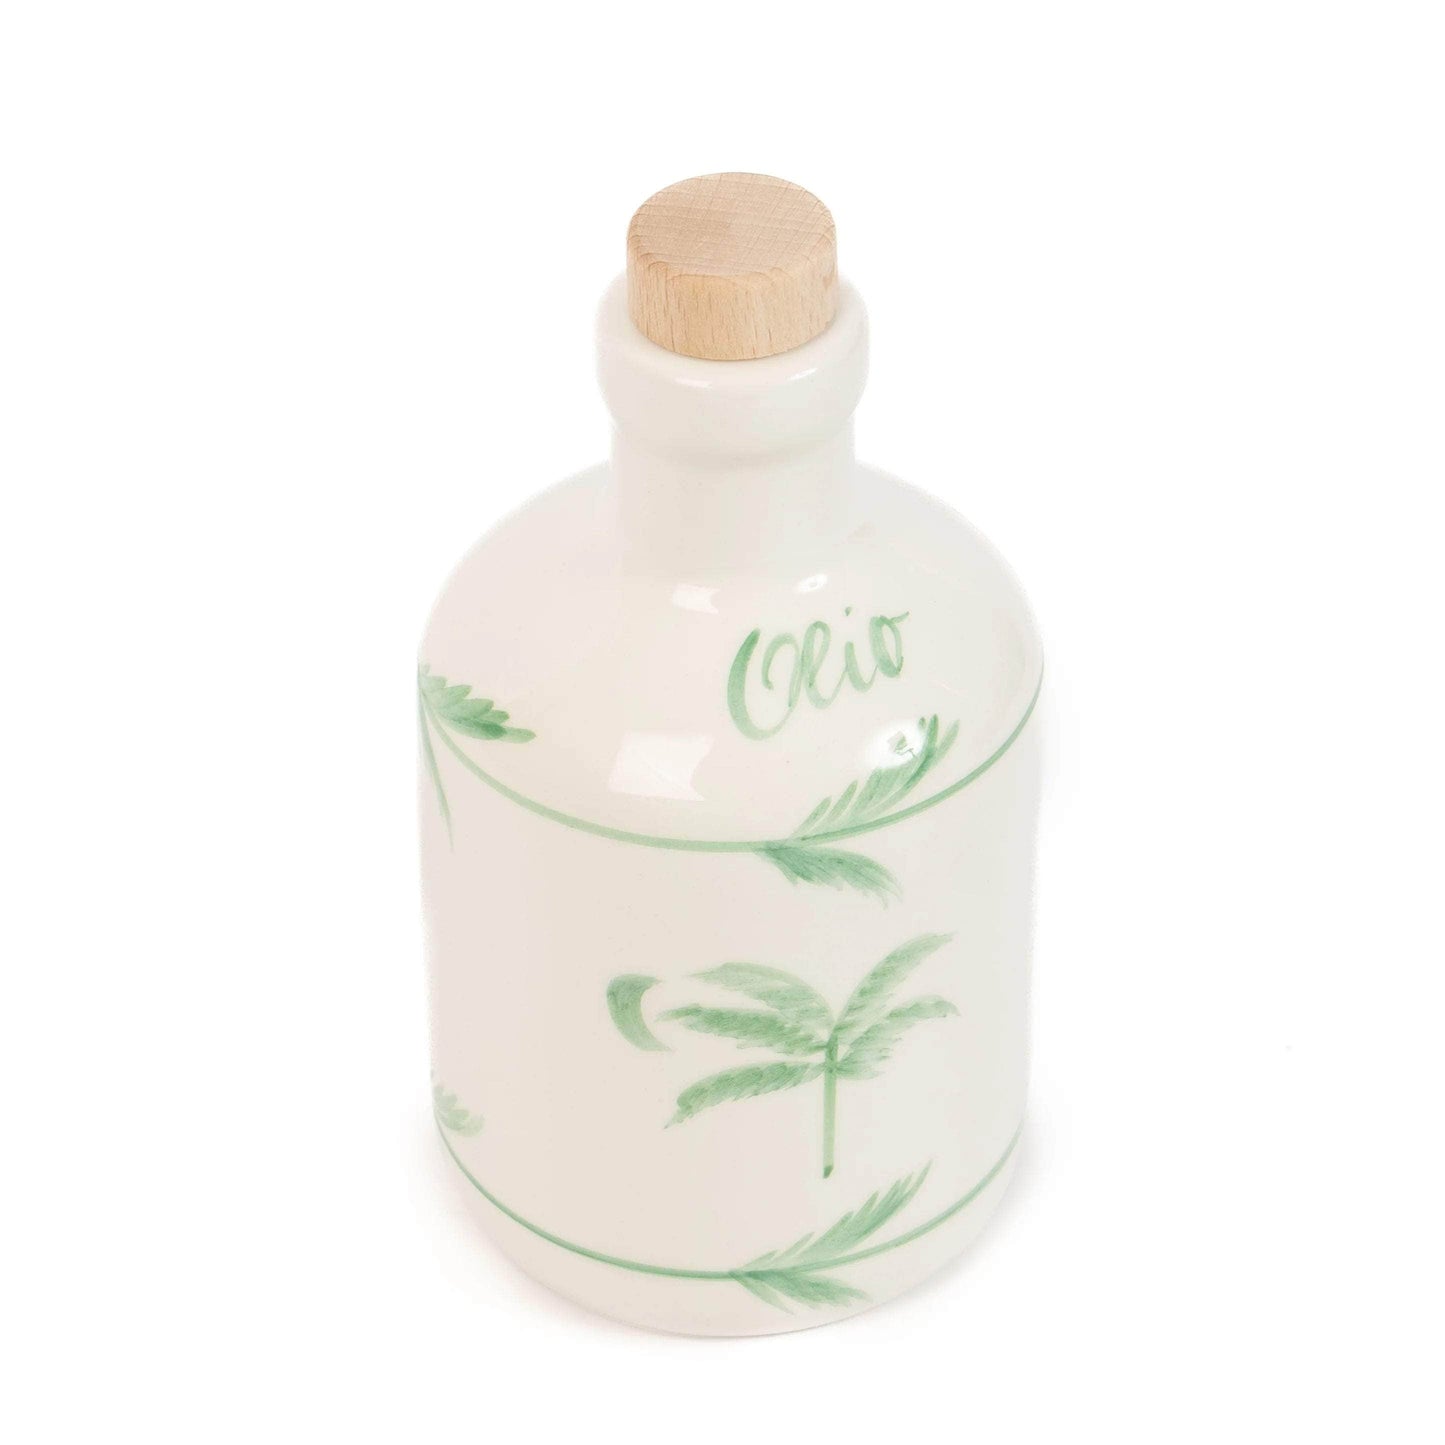 Palmtree Olive Oil Bottle